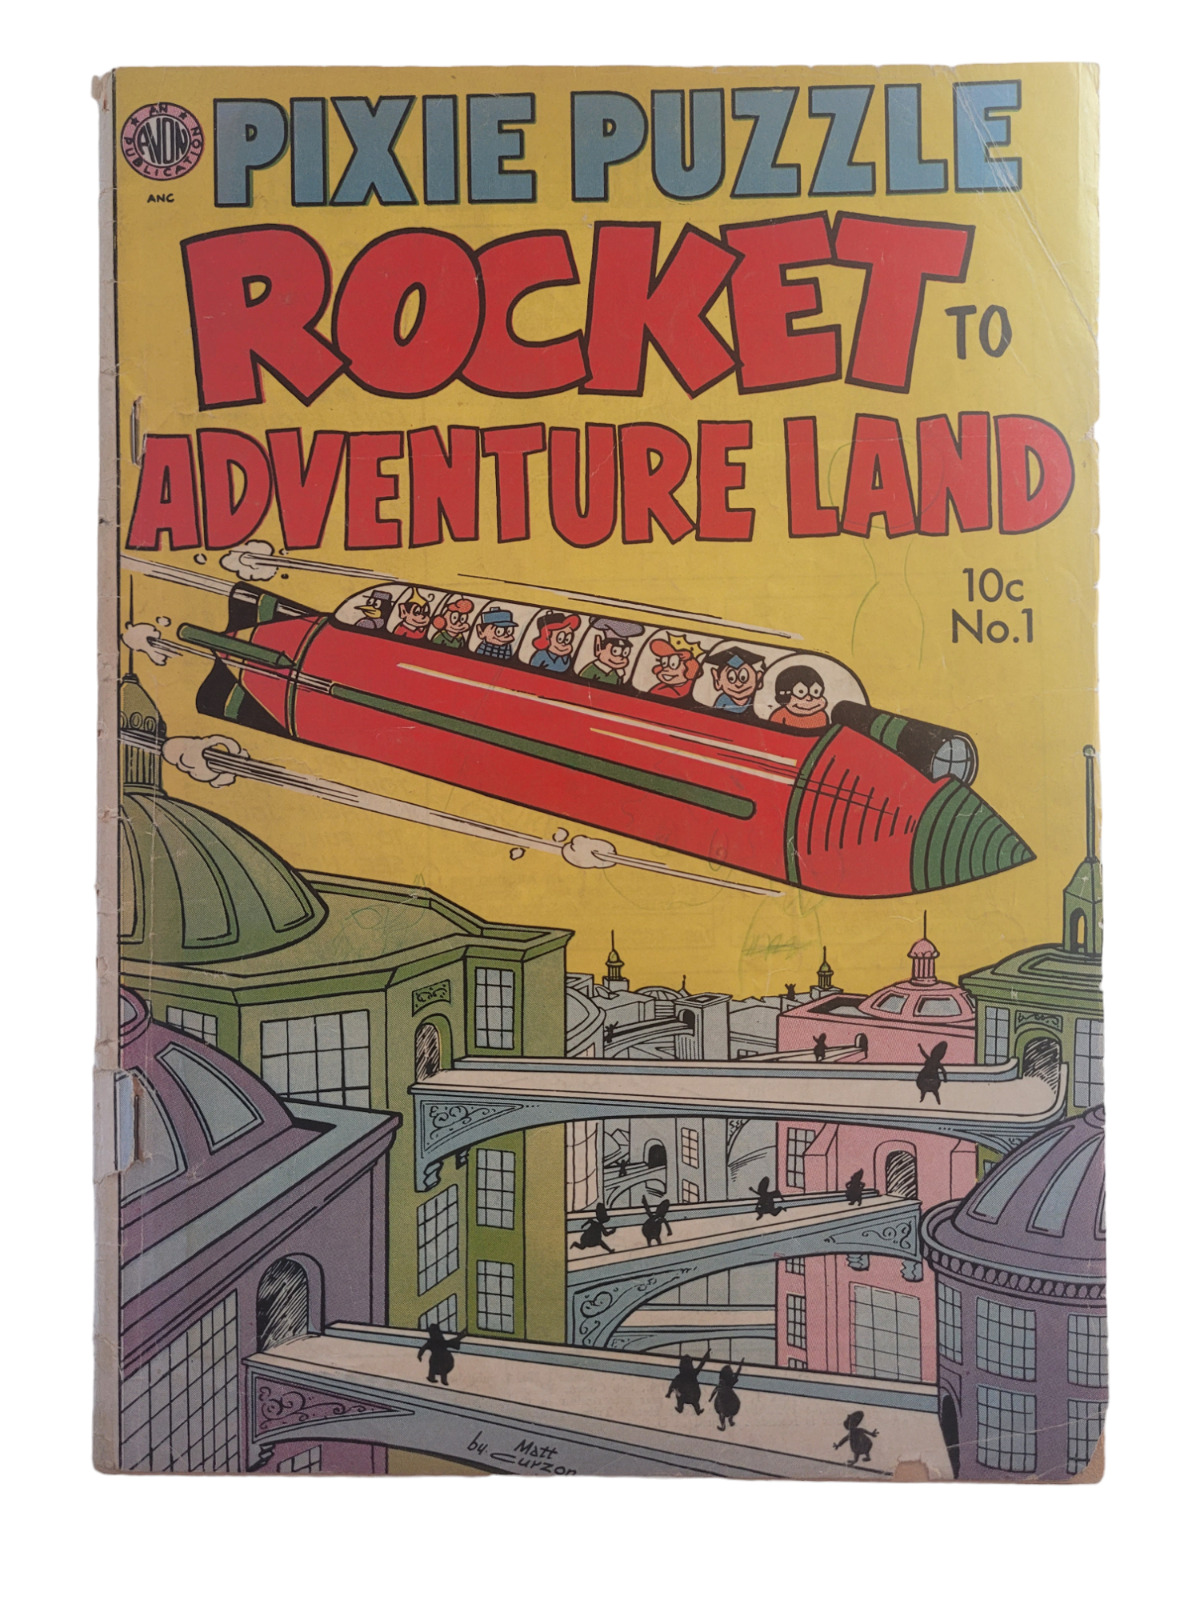 Pixie Puzzle Rocket to Adventureland 1952 Avon one-shot Rare FR/GD Raw Vintage